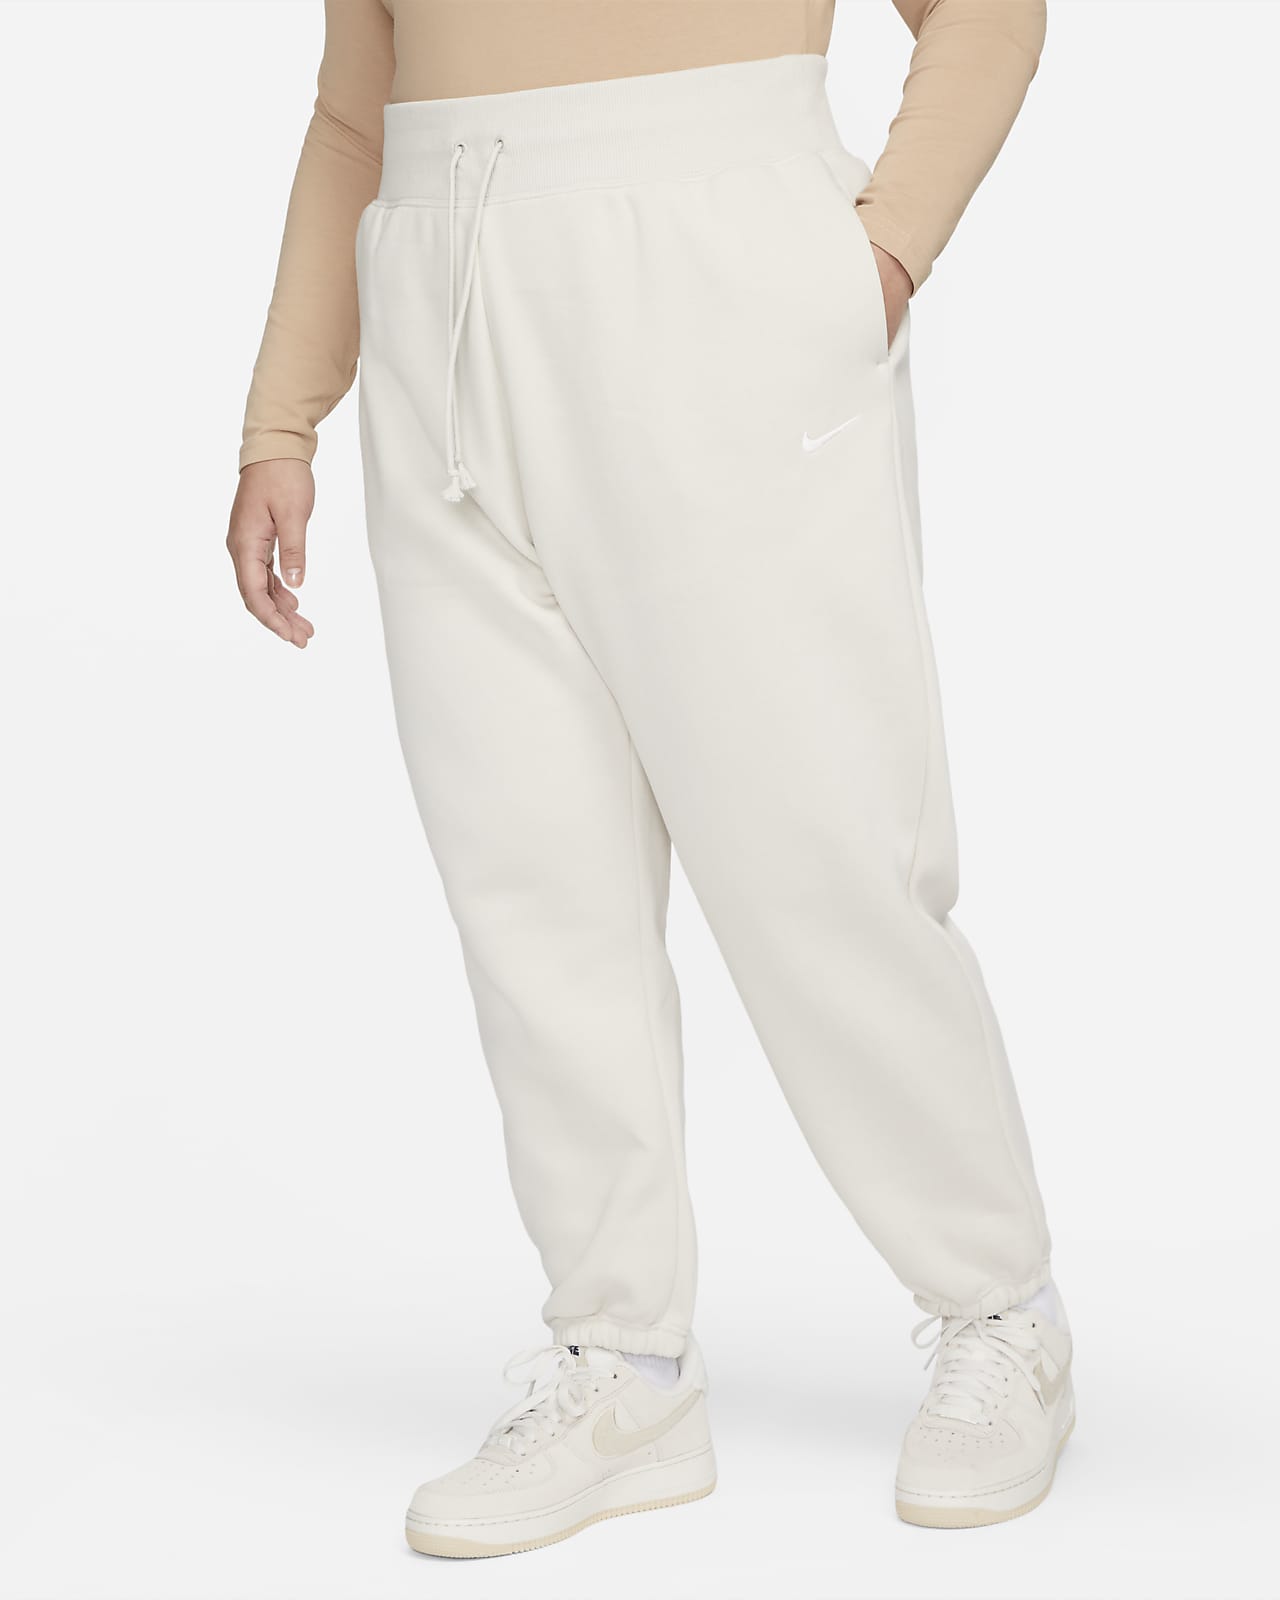 Nike Sportswear Phoenix Fleece magas derekú, túlméretes női melegítőnadrág (plus size méret)